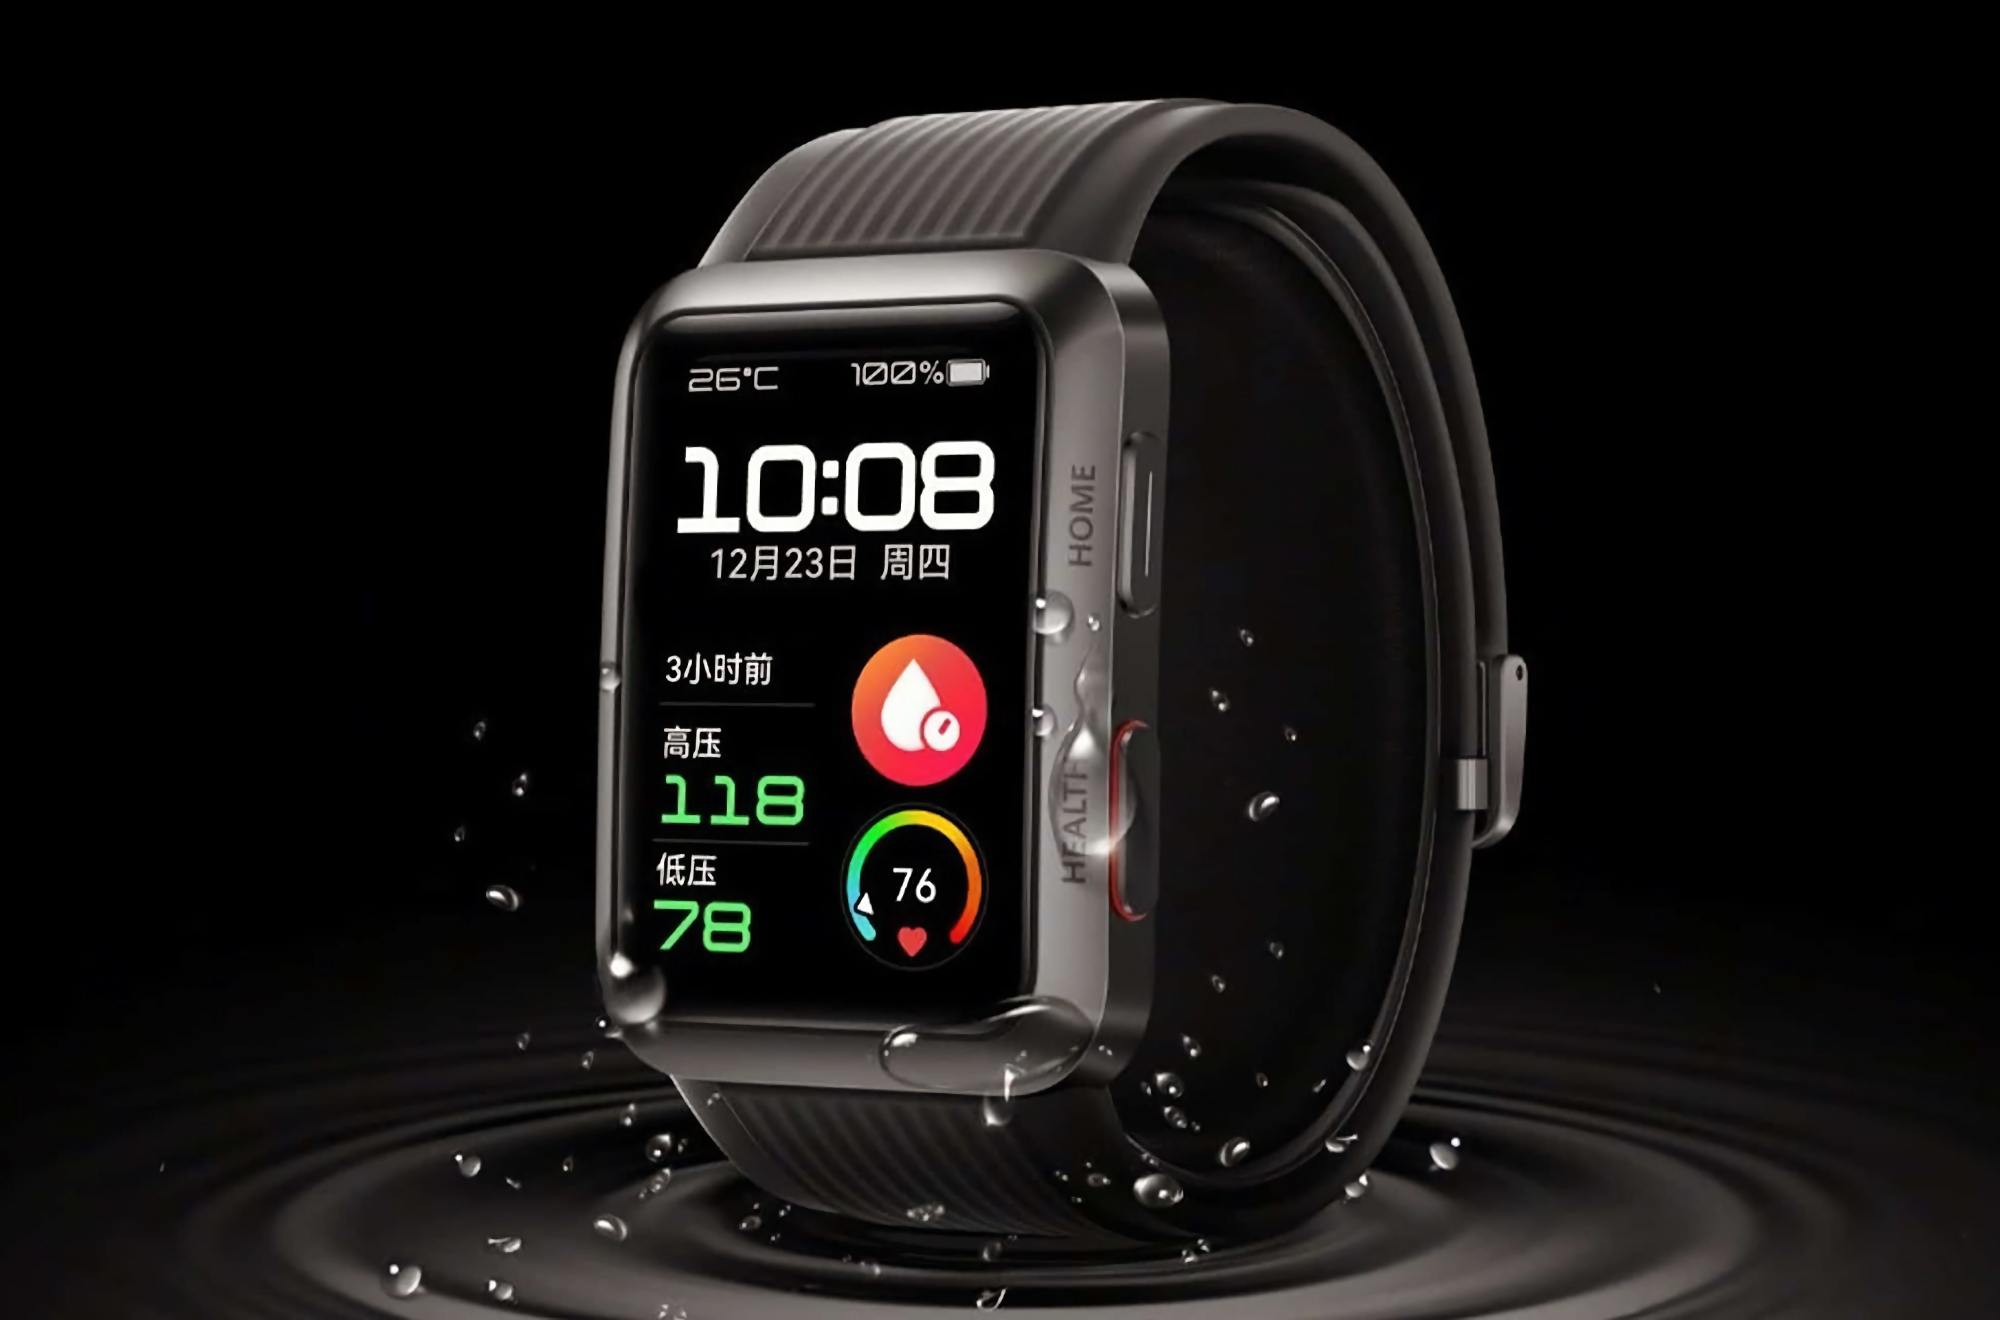 Plotka: Huawei pracuje nad smartwatchem Watch D2 z funkcją pomiaru ciśnienia krwi